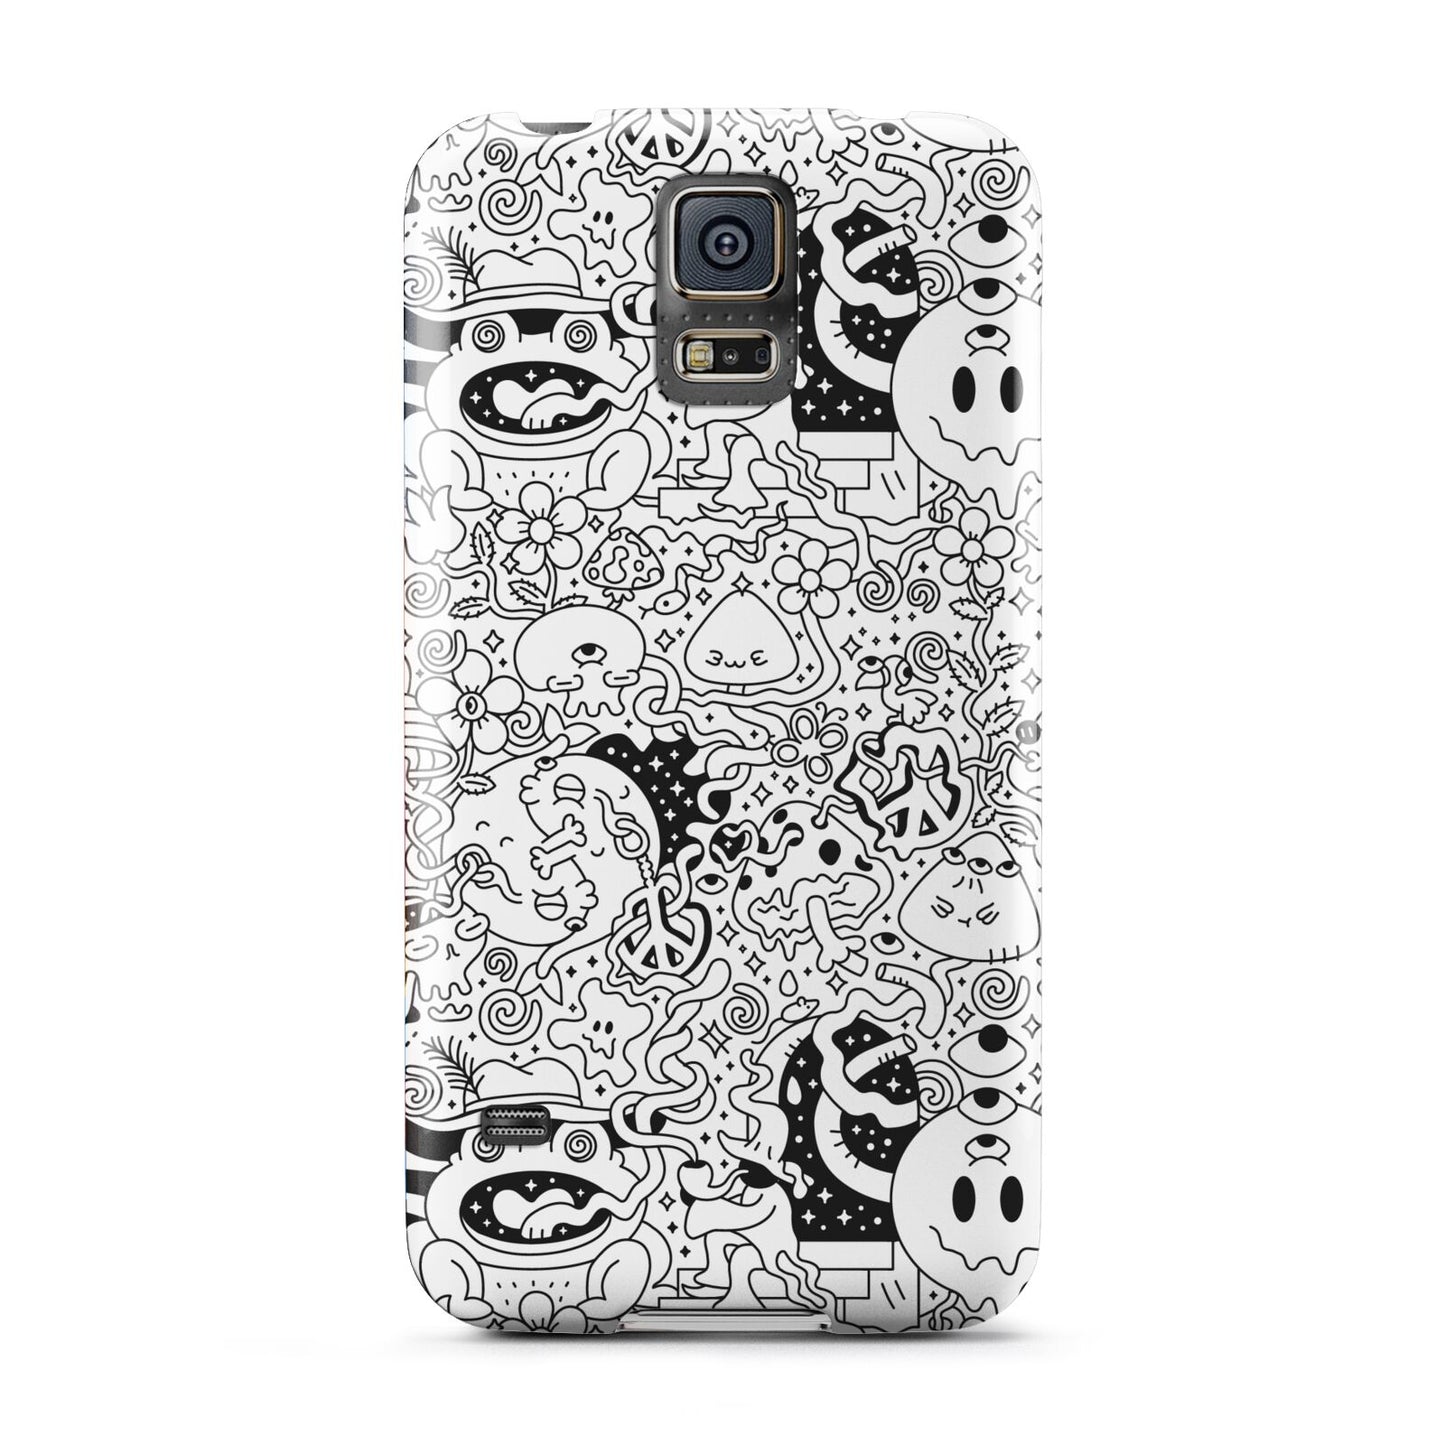 Psychedelic Cartoon Samsung Galaxy S5 Case